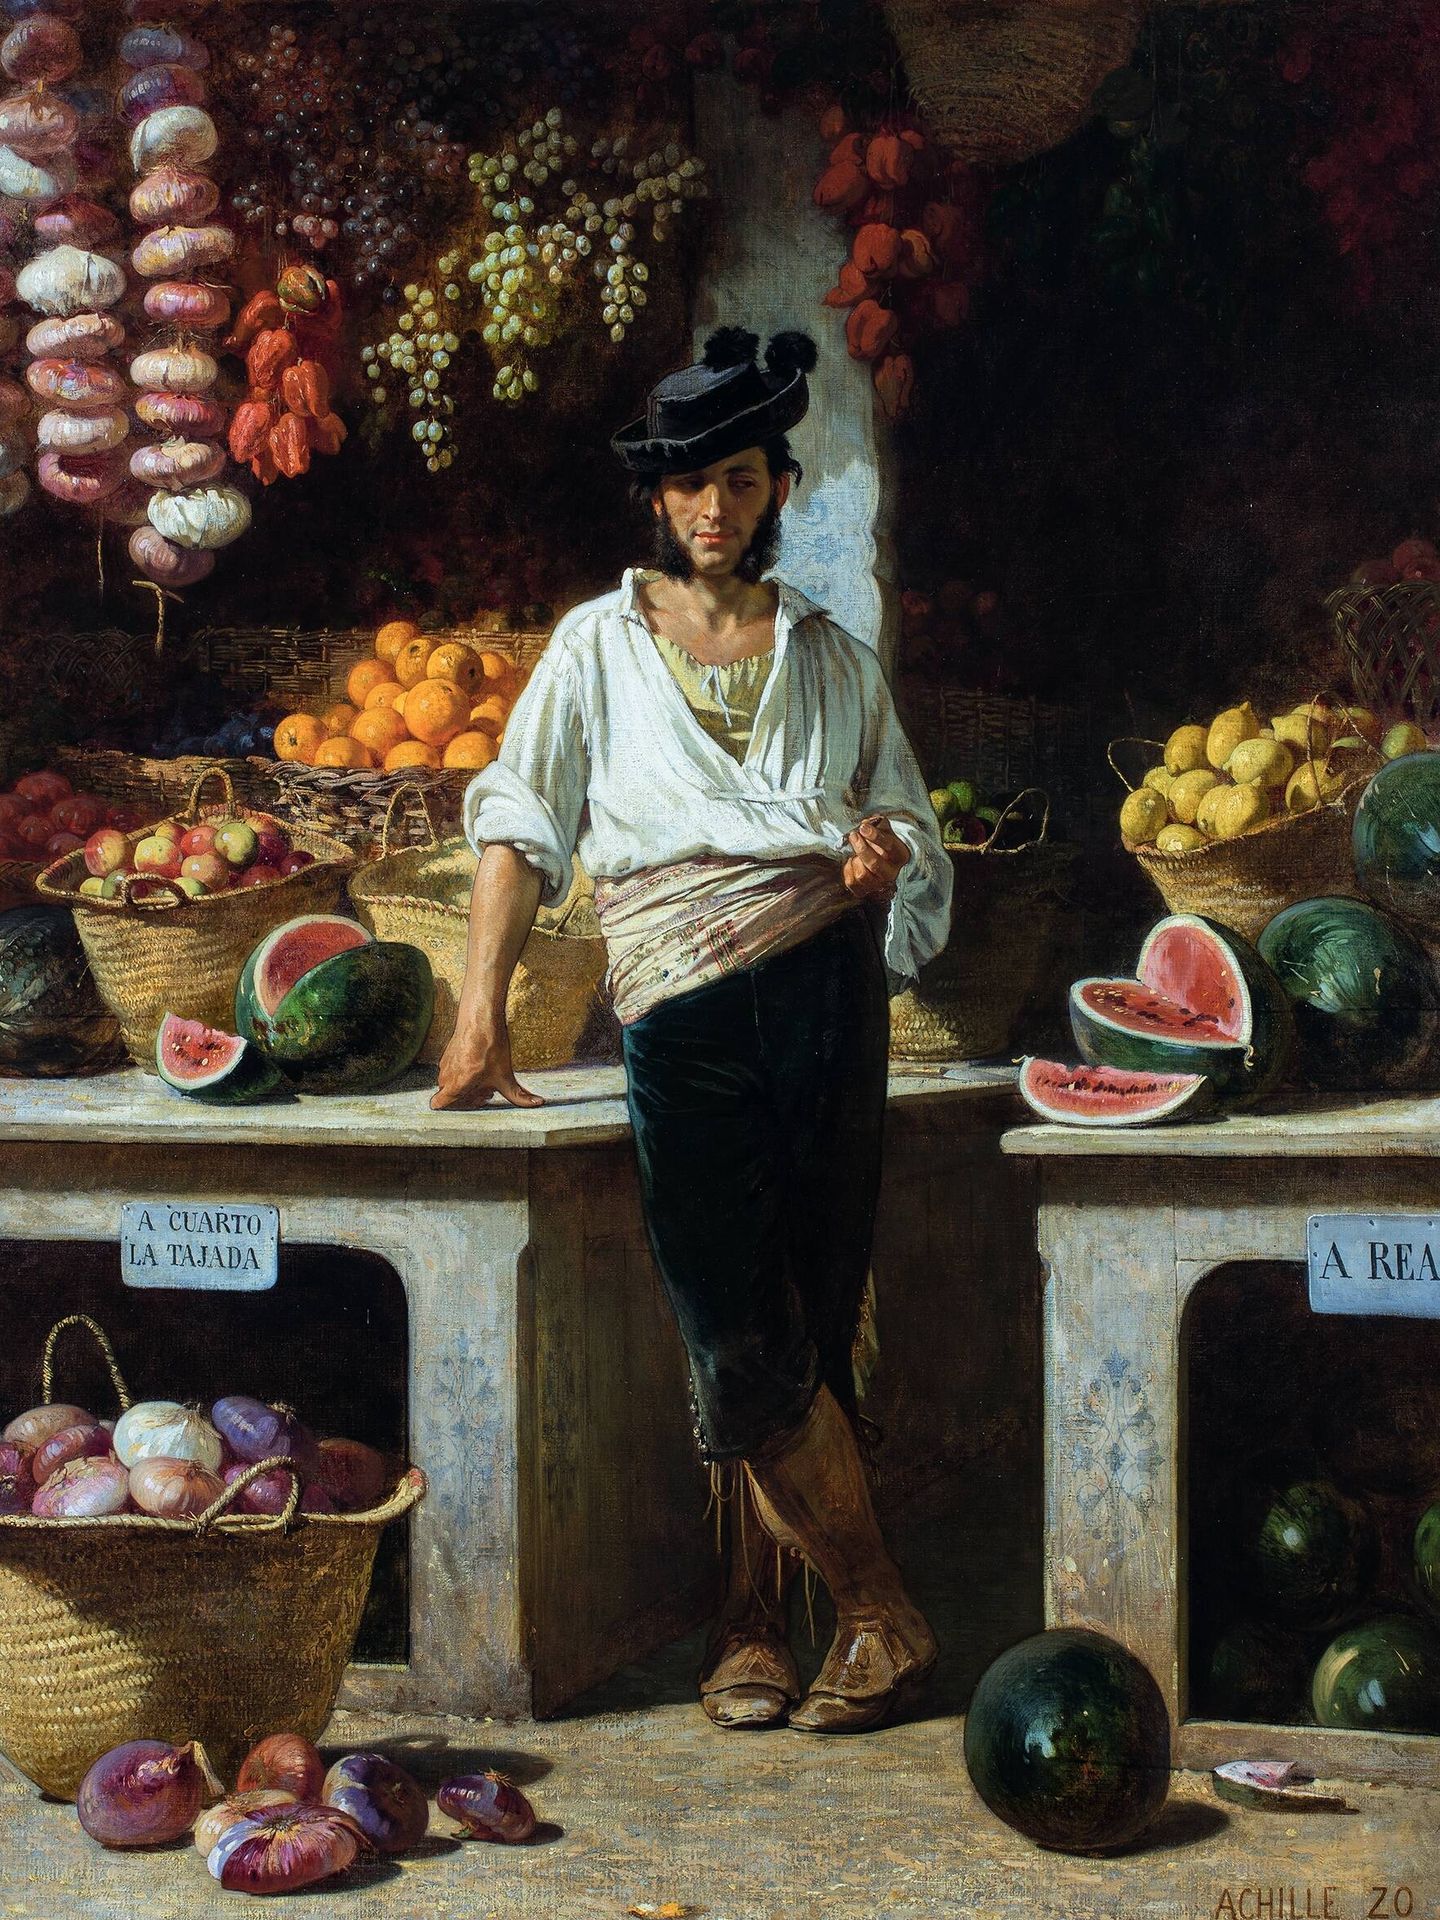 Vendedor de fruta en Sevilla. (Jean-Baptiste Achille Zo, 1864)